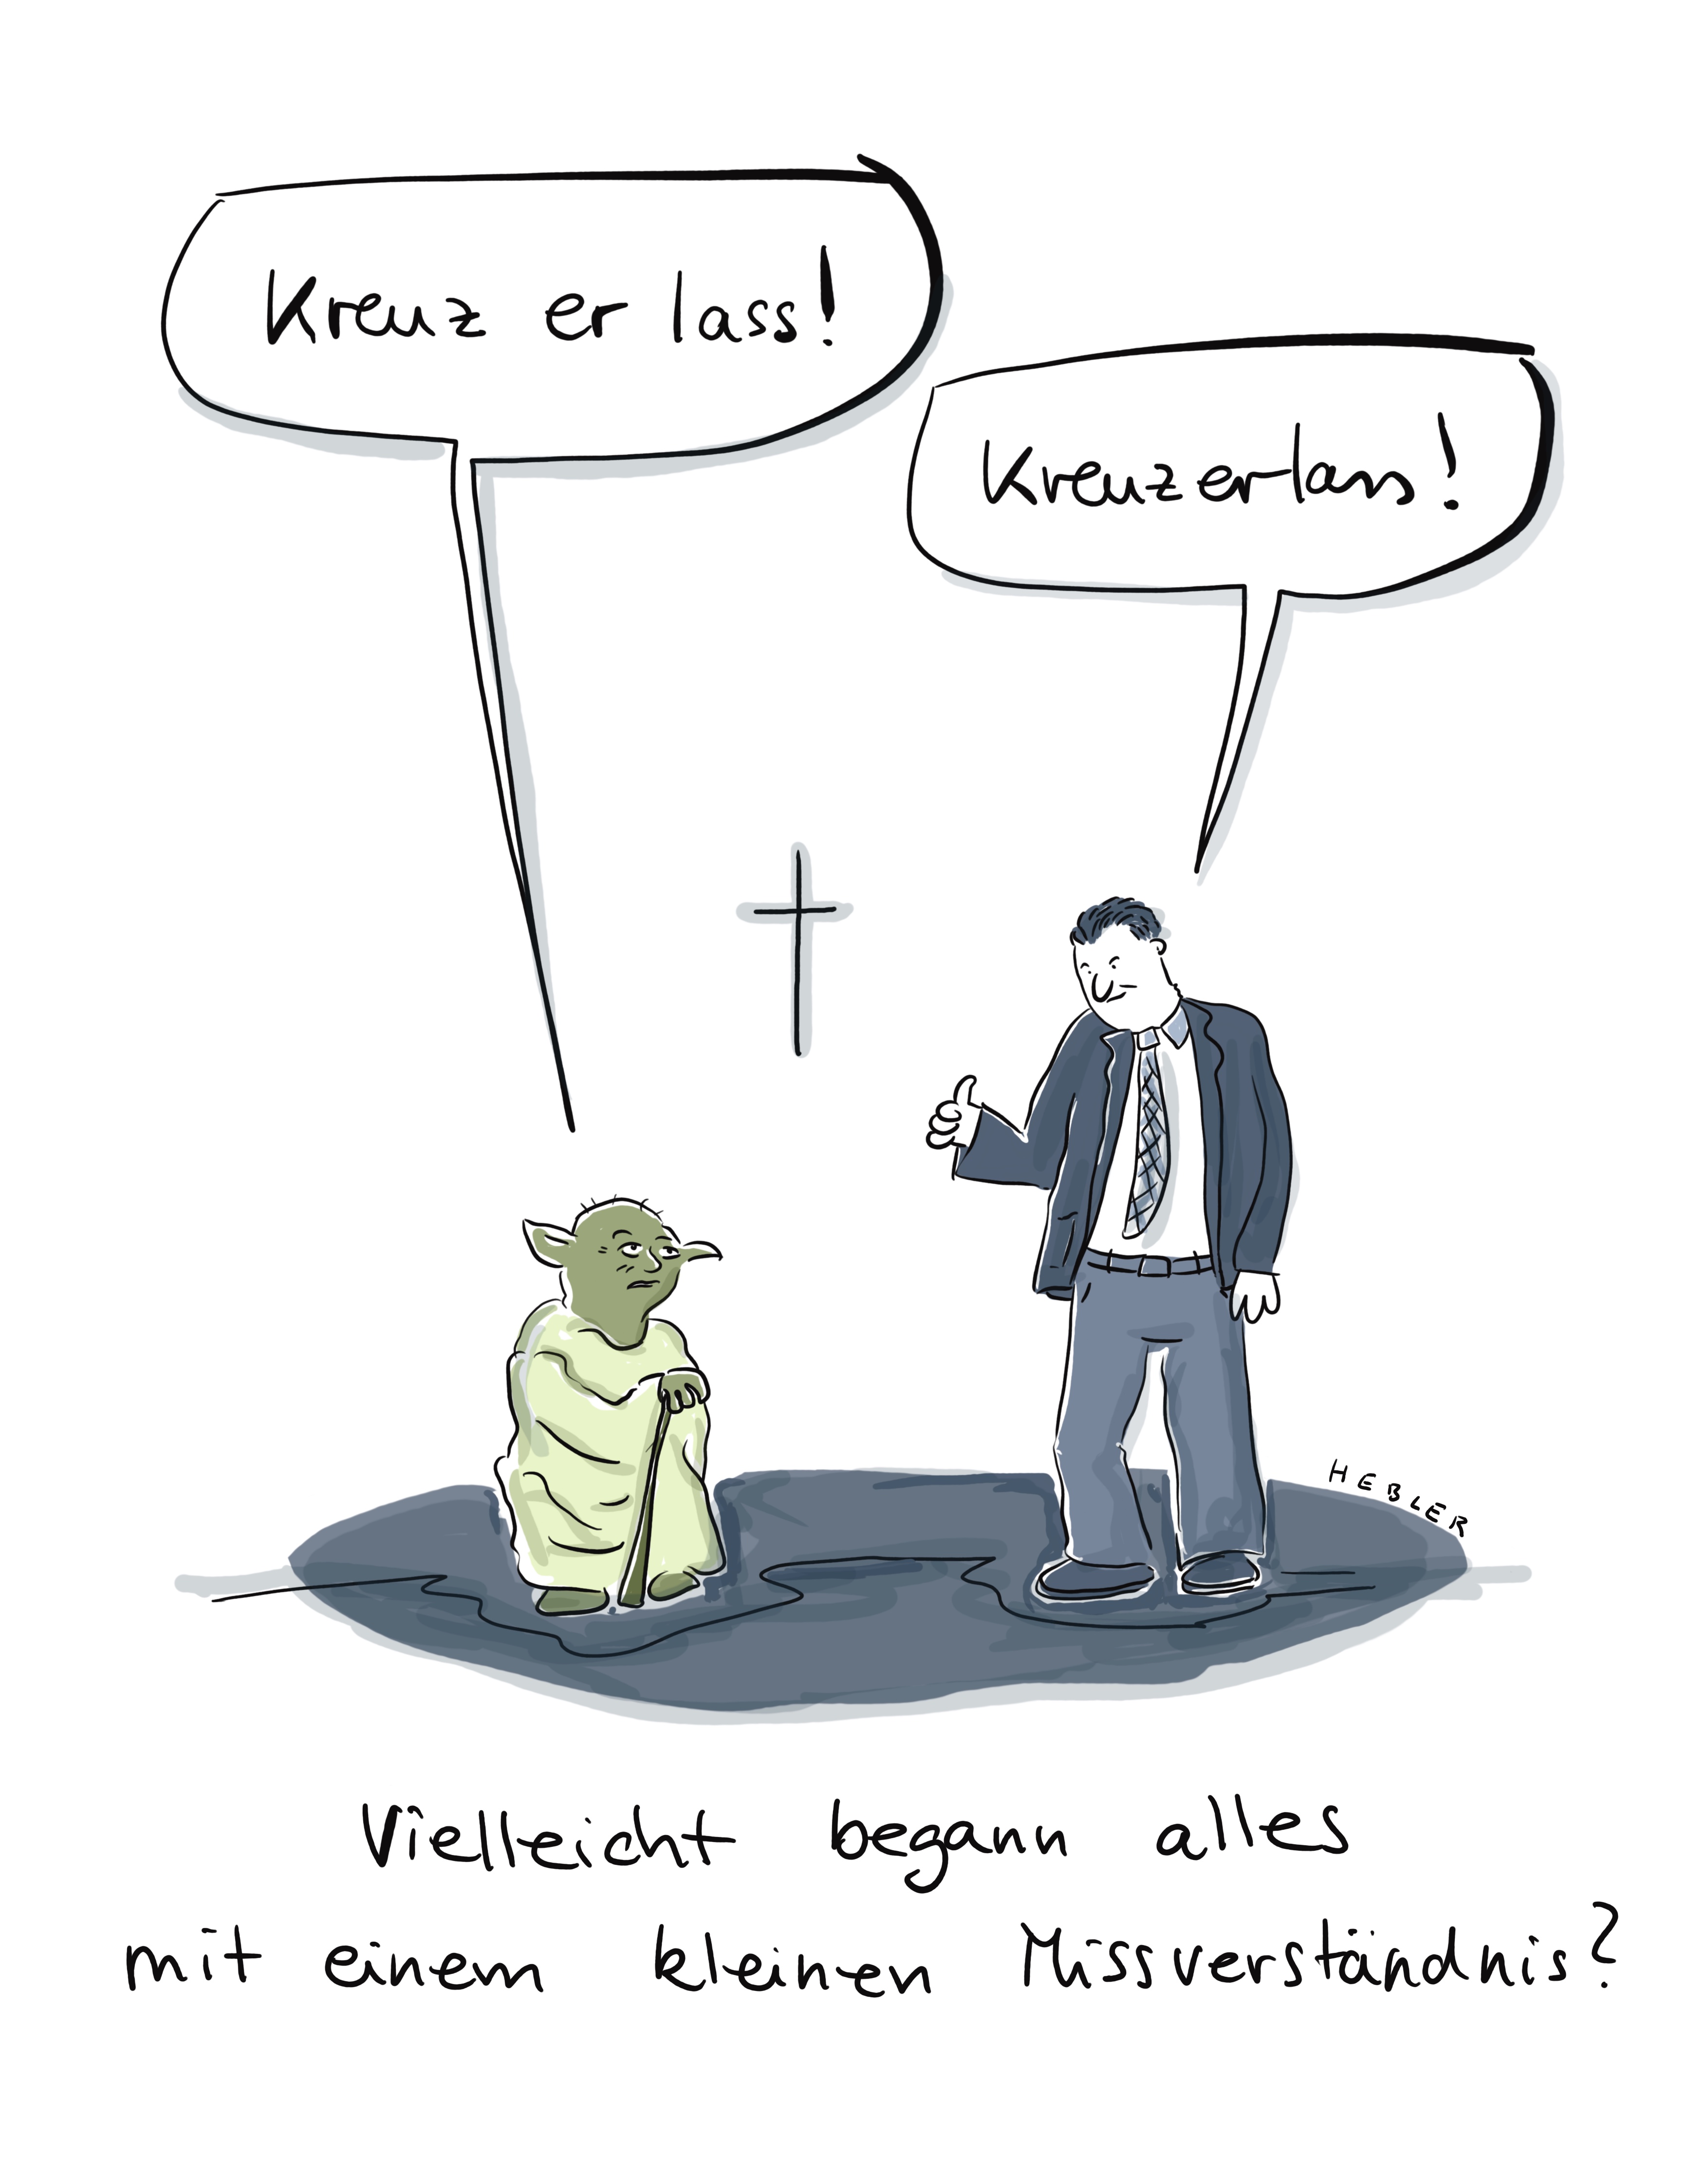 "Yoda - Kreuz er lass!"